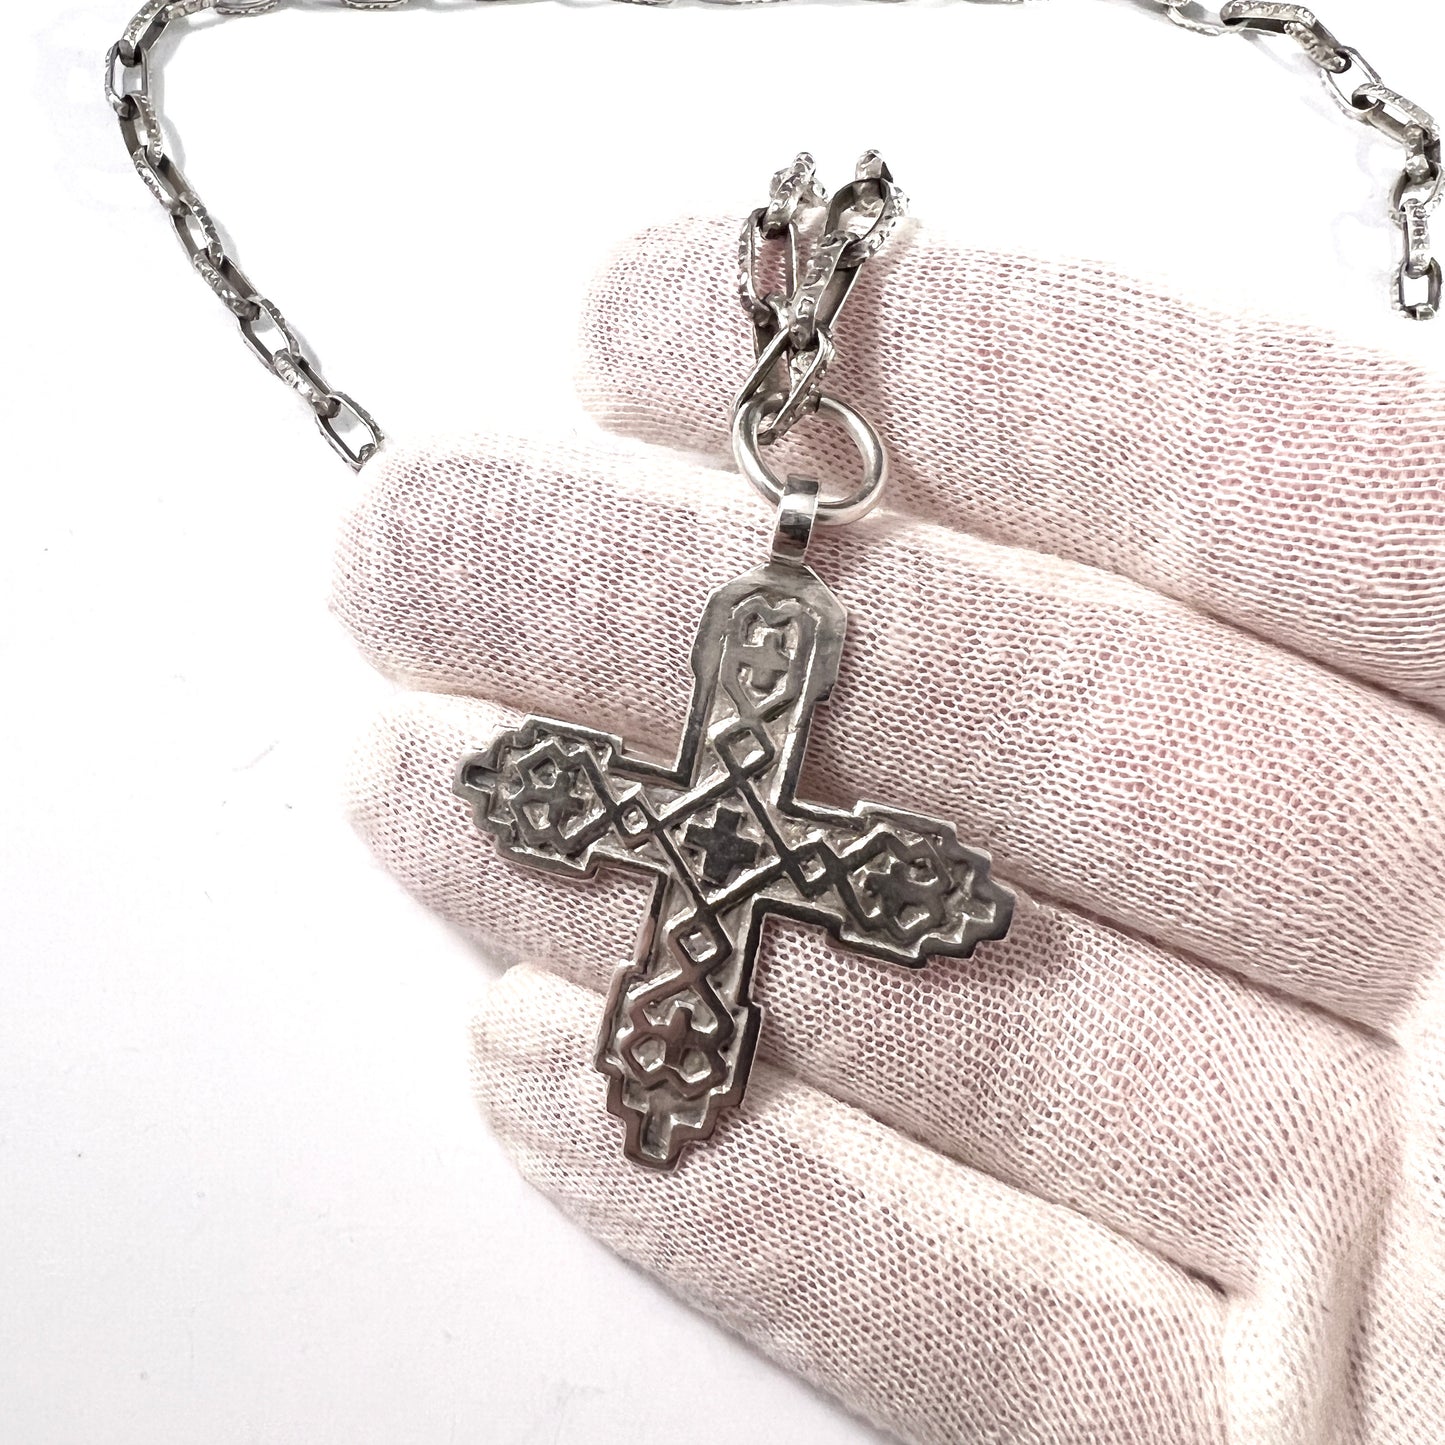 H.Kaksonen for Kalevala Koru, Finland 1943. War-Time Solid Silver Cross Pendant Necklace.